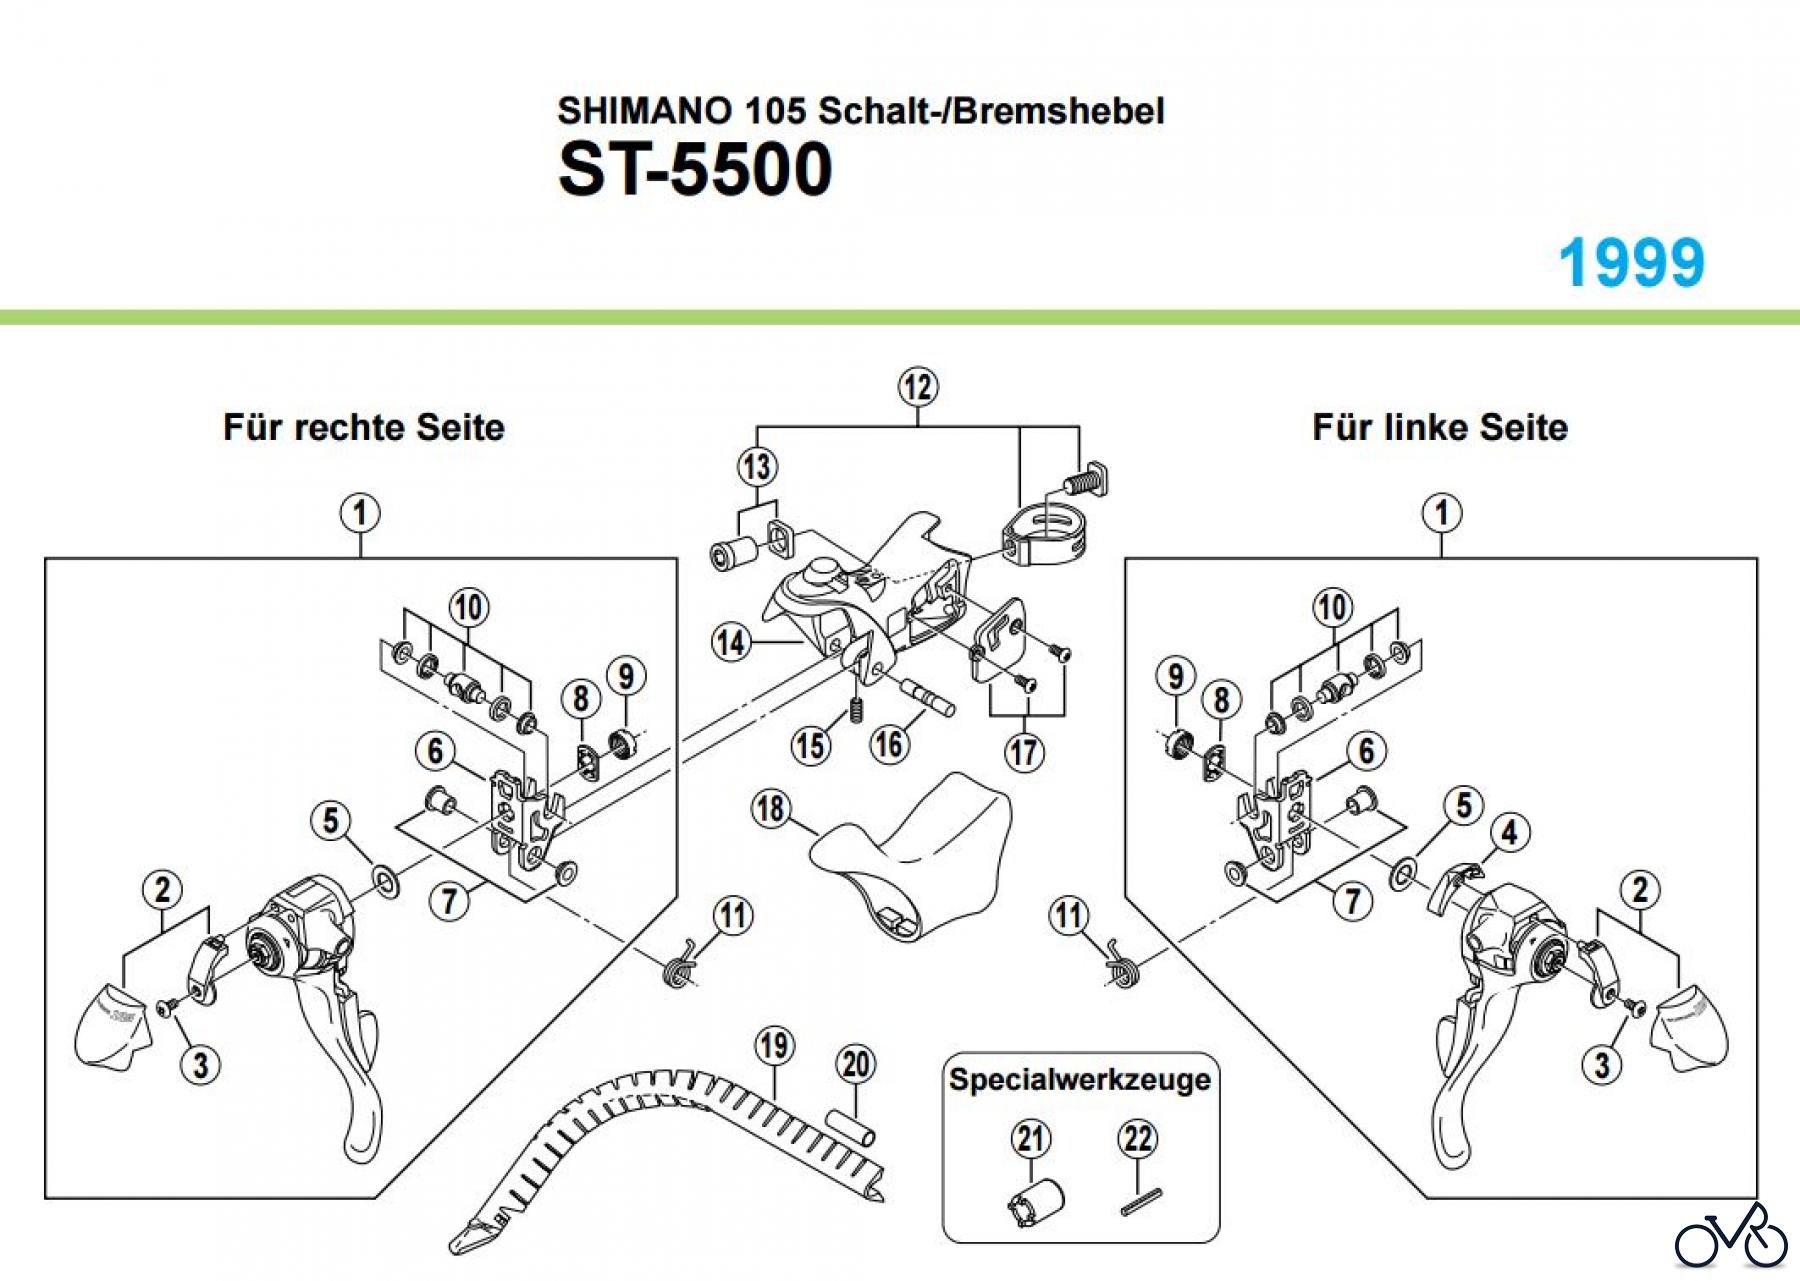  Shimano ST Rapidfire- Schaltbremshebel ST-5500, 1999 SHIMANO 105 Schalt-/Bremshebel